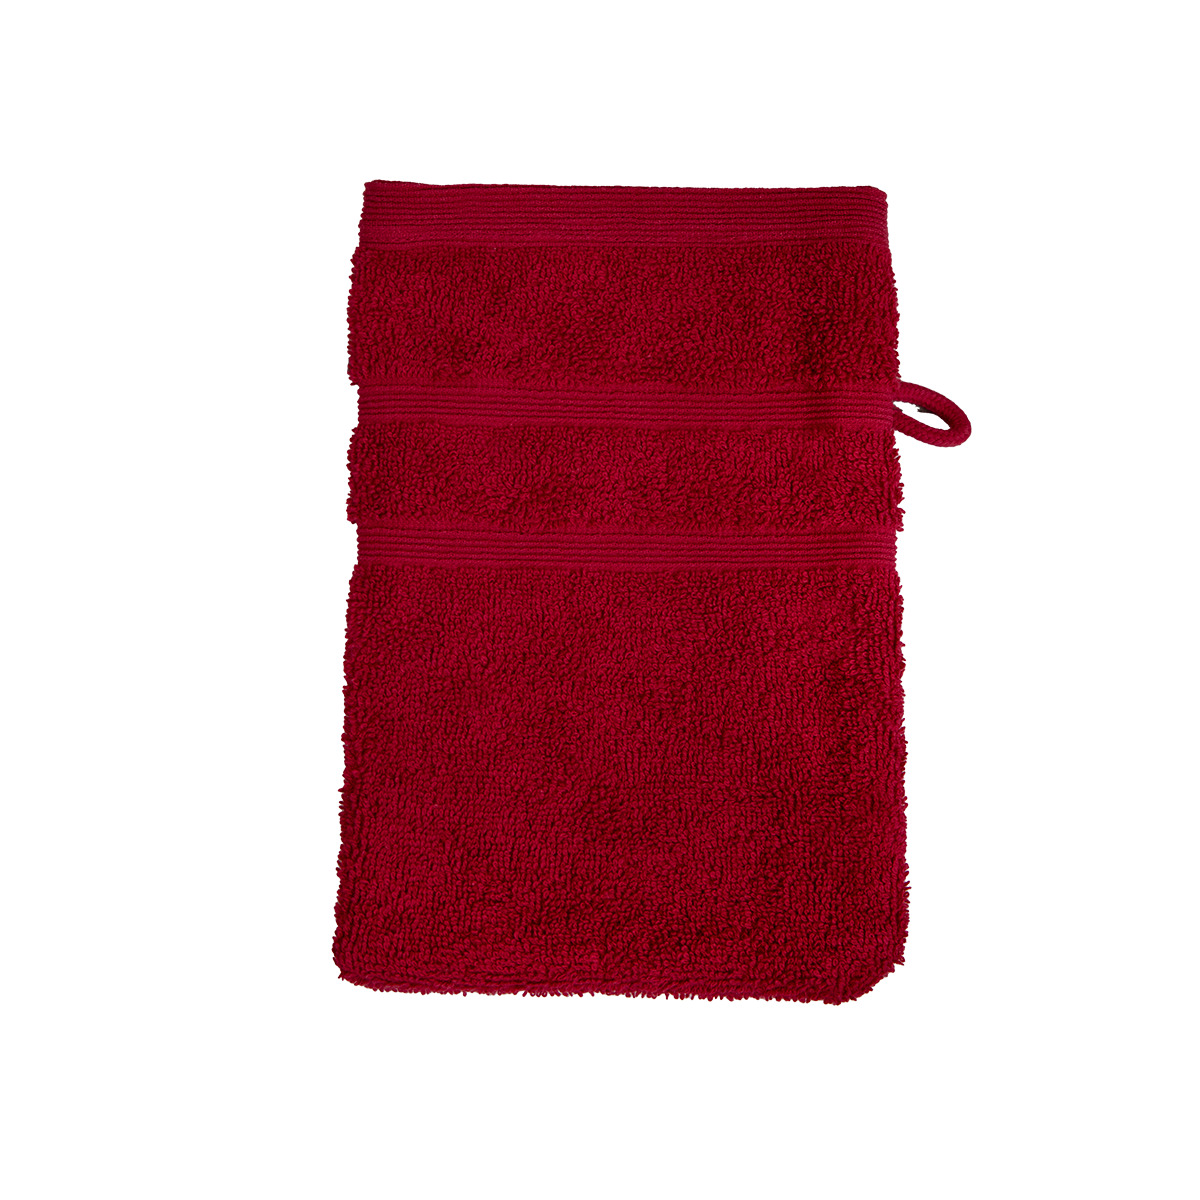 Bio Baumwoll Waschhandschuh, Größe 16 mal 21 cm in der Farbe Bordeaux (dunkles Rot)